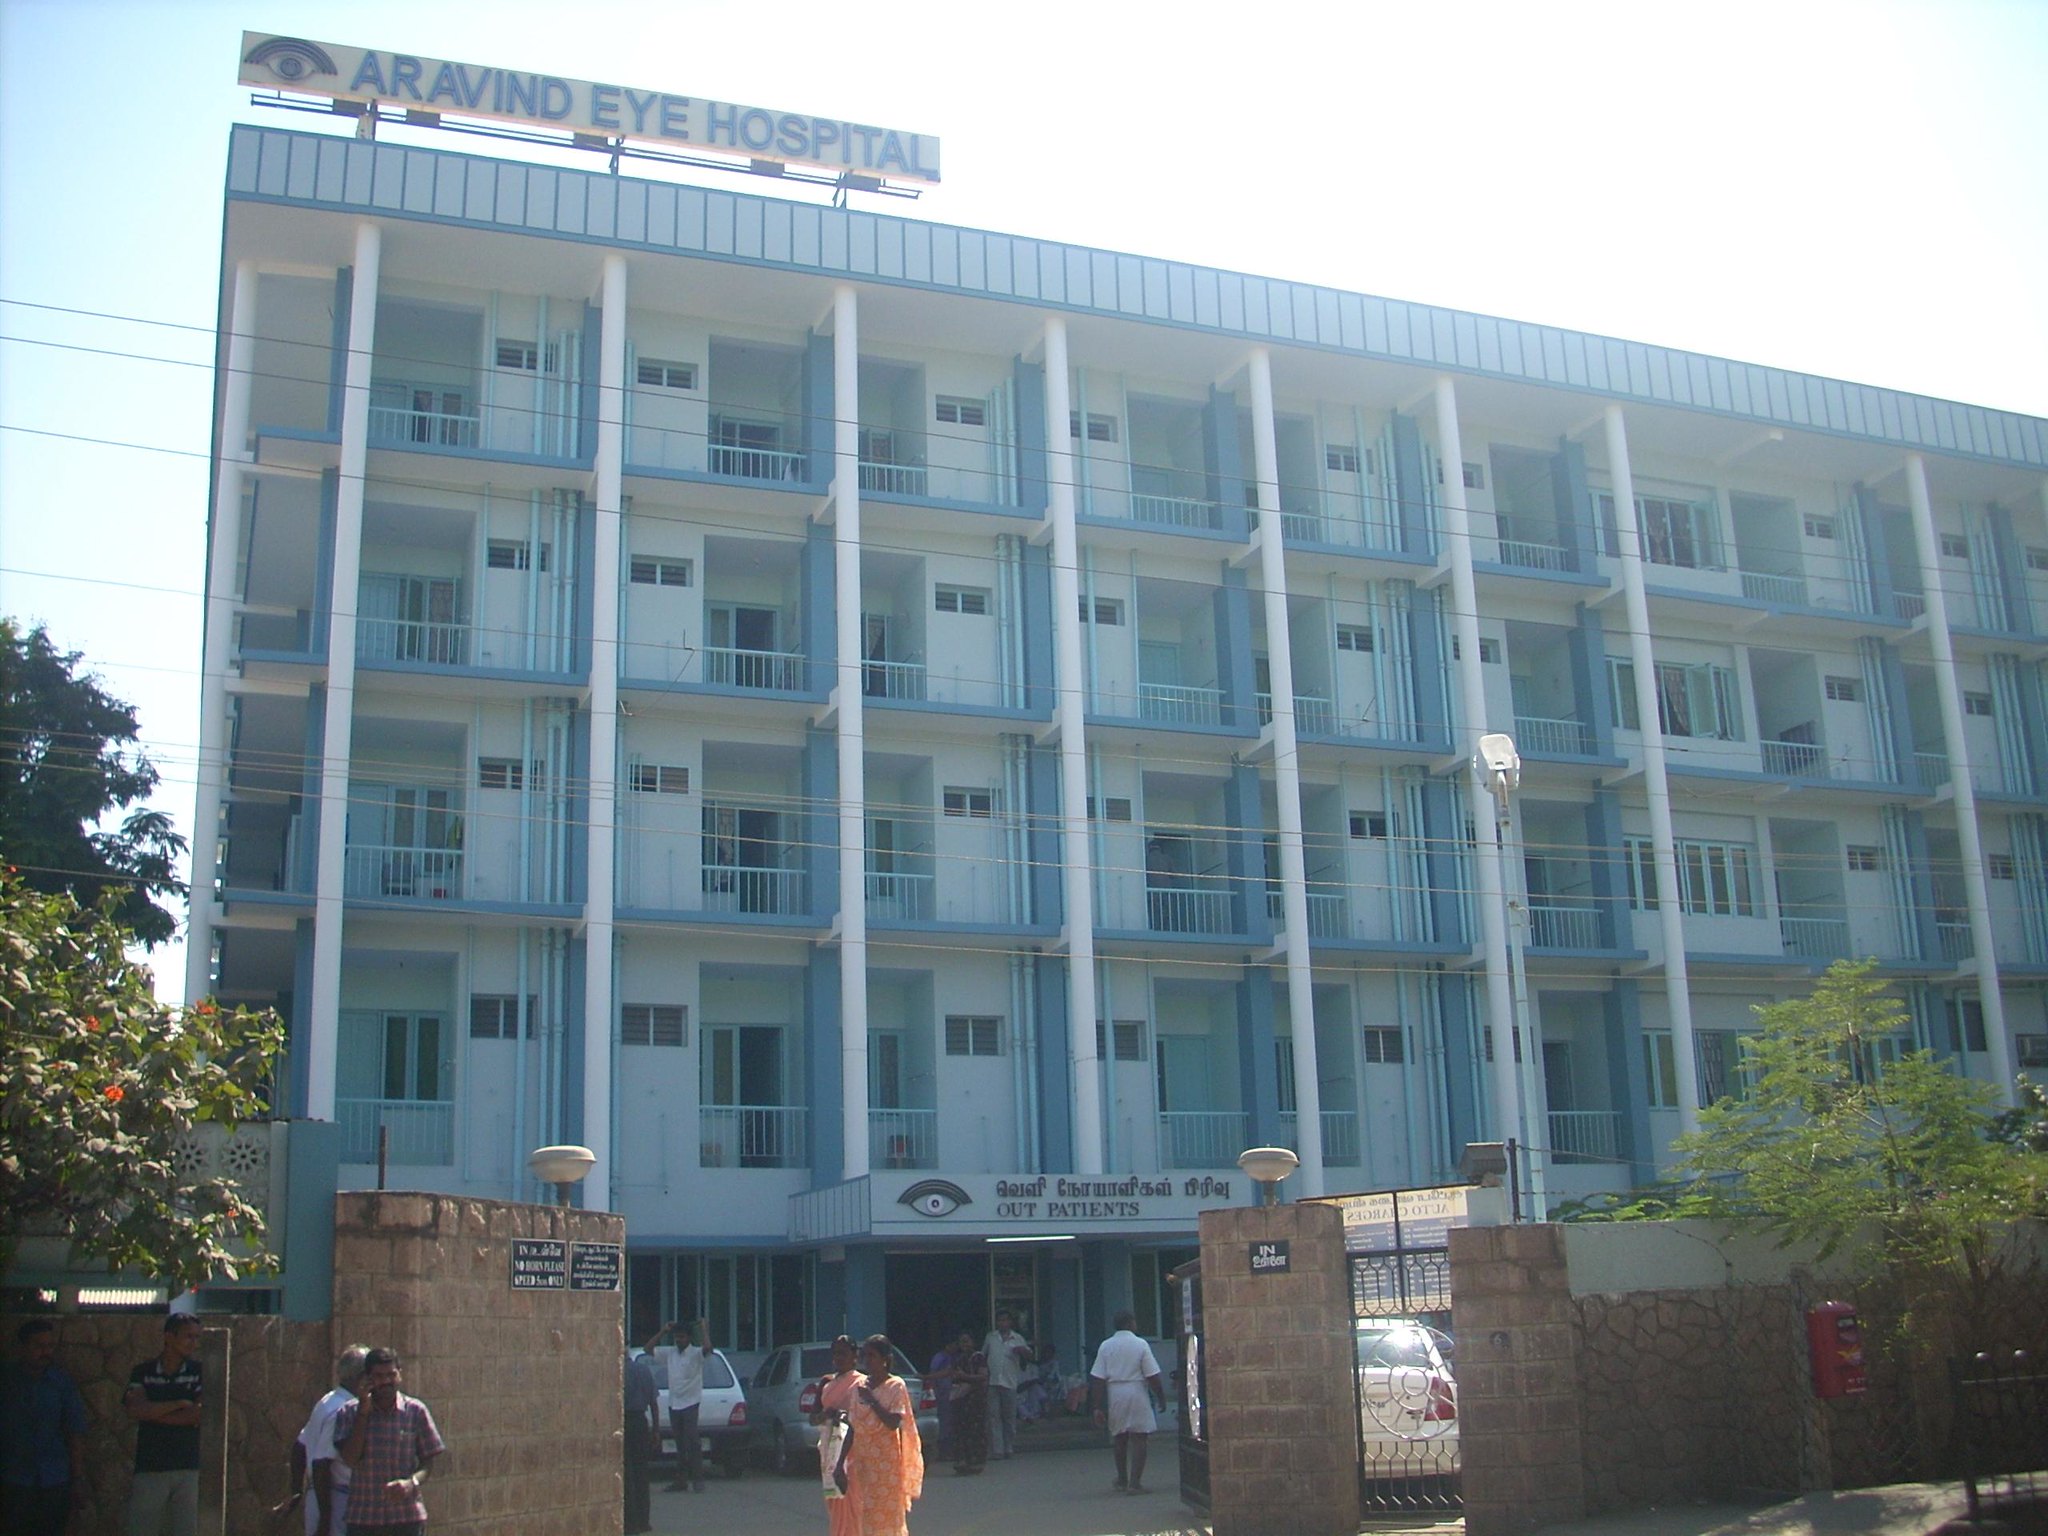 An Aravind Eye Hospital in Madurai, Tamil Nadu.